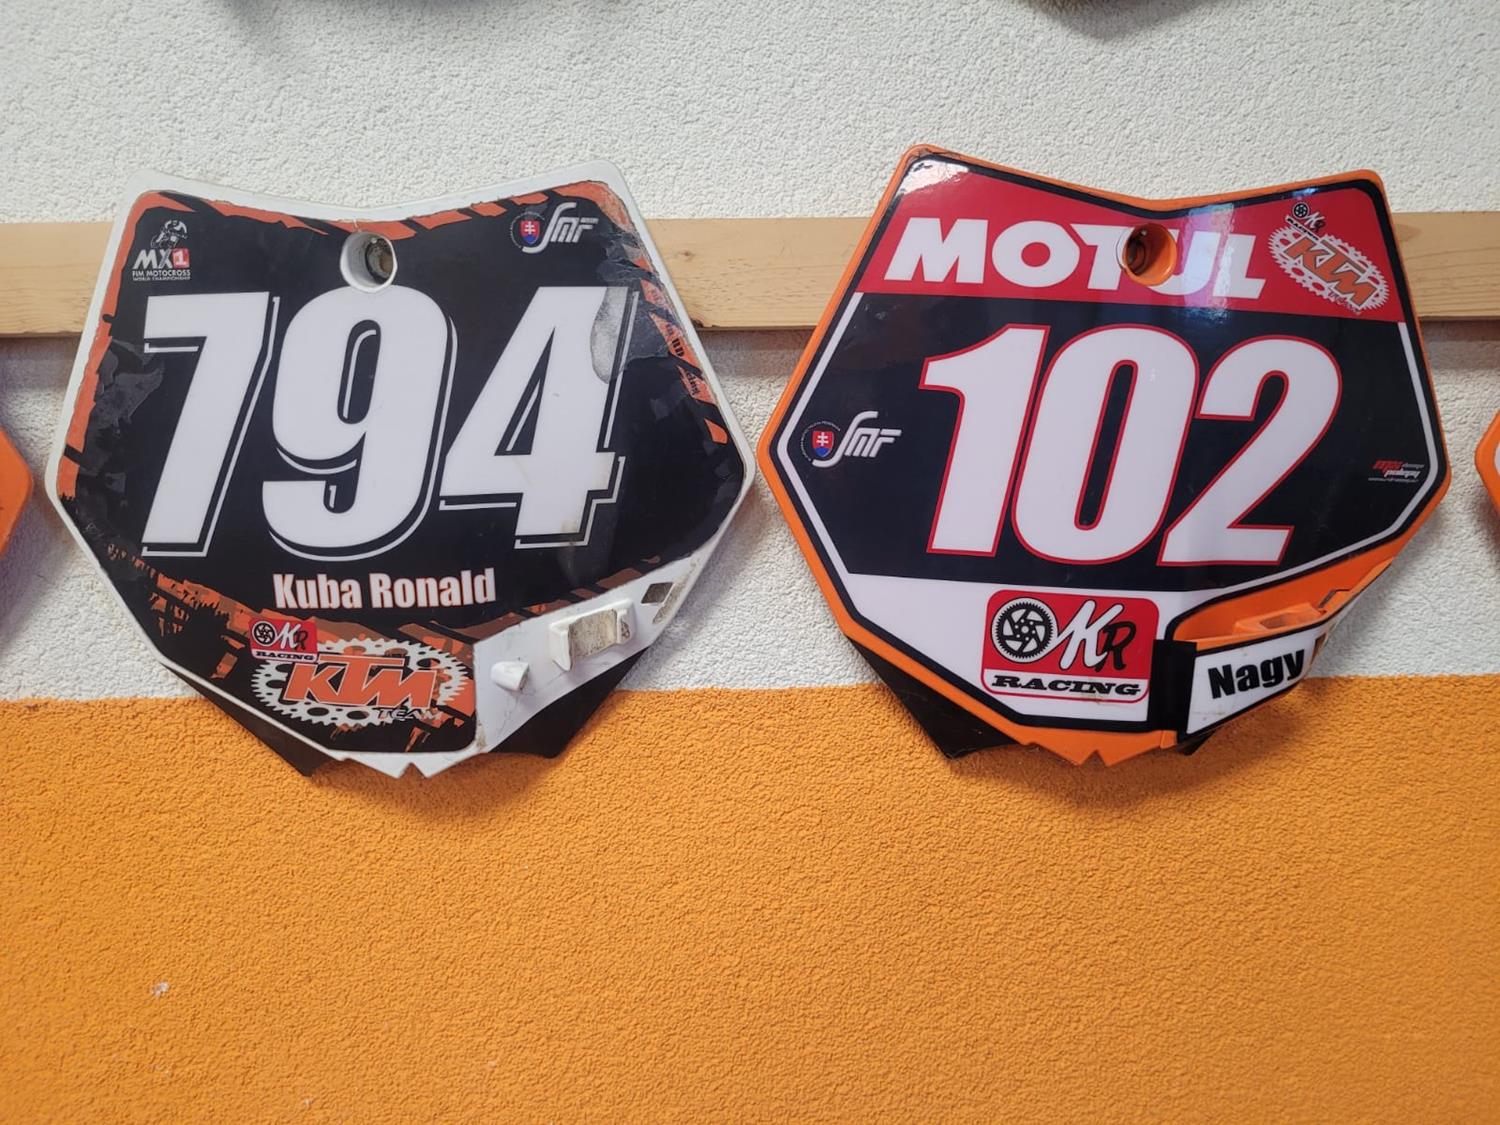 OKR Moto je autorizovaný servis a predaj značky KTM od roku 2003